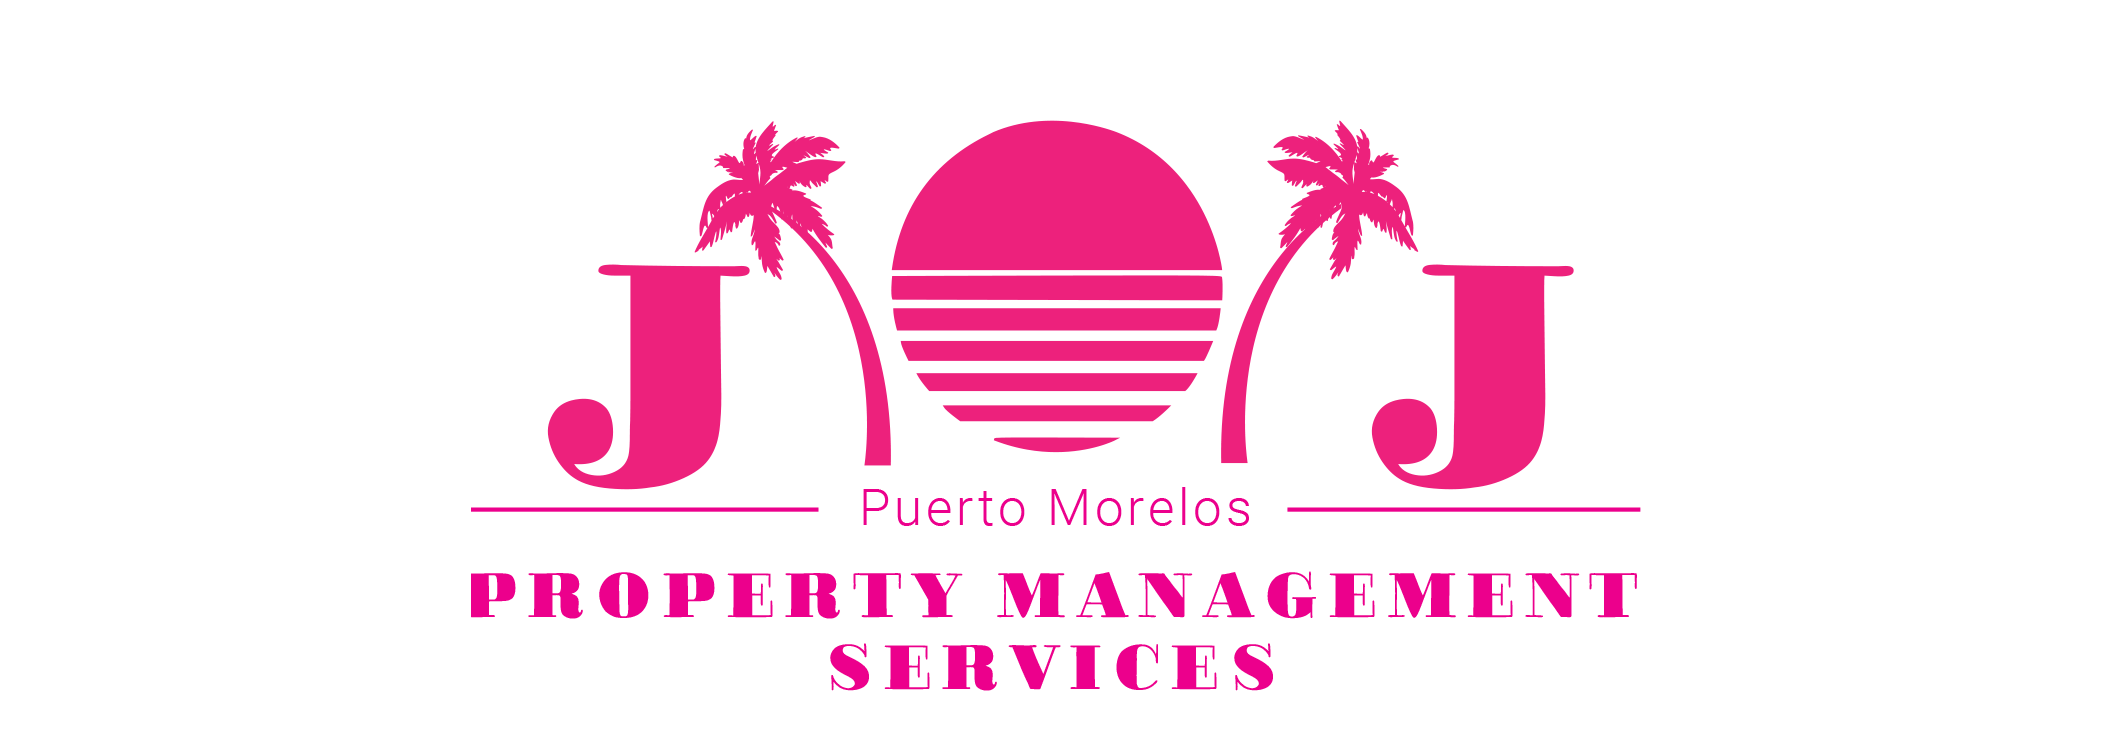 Logo for JJ Property Management